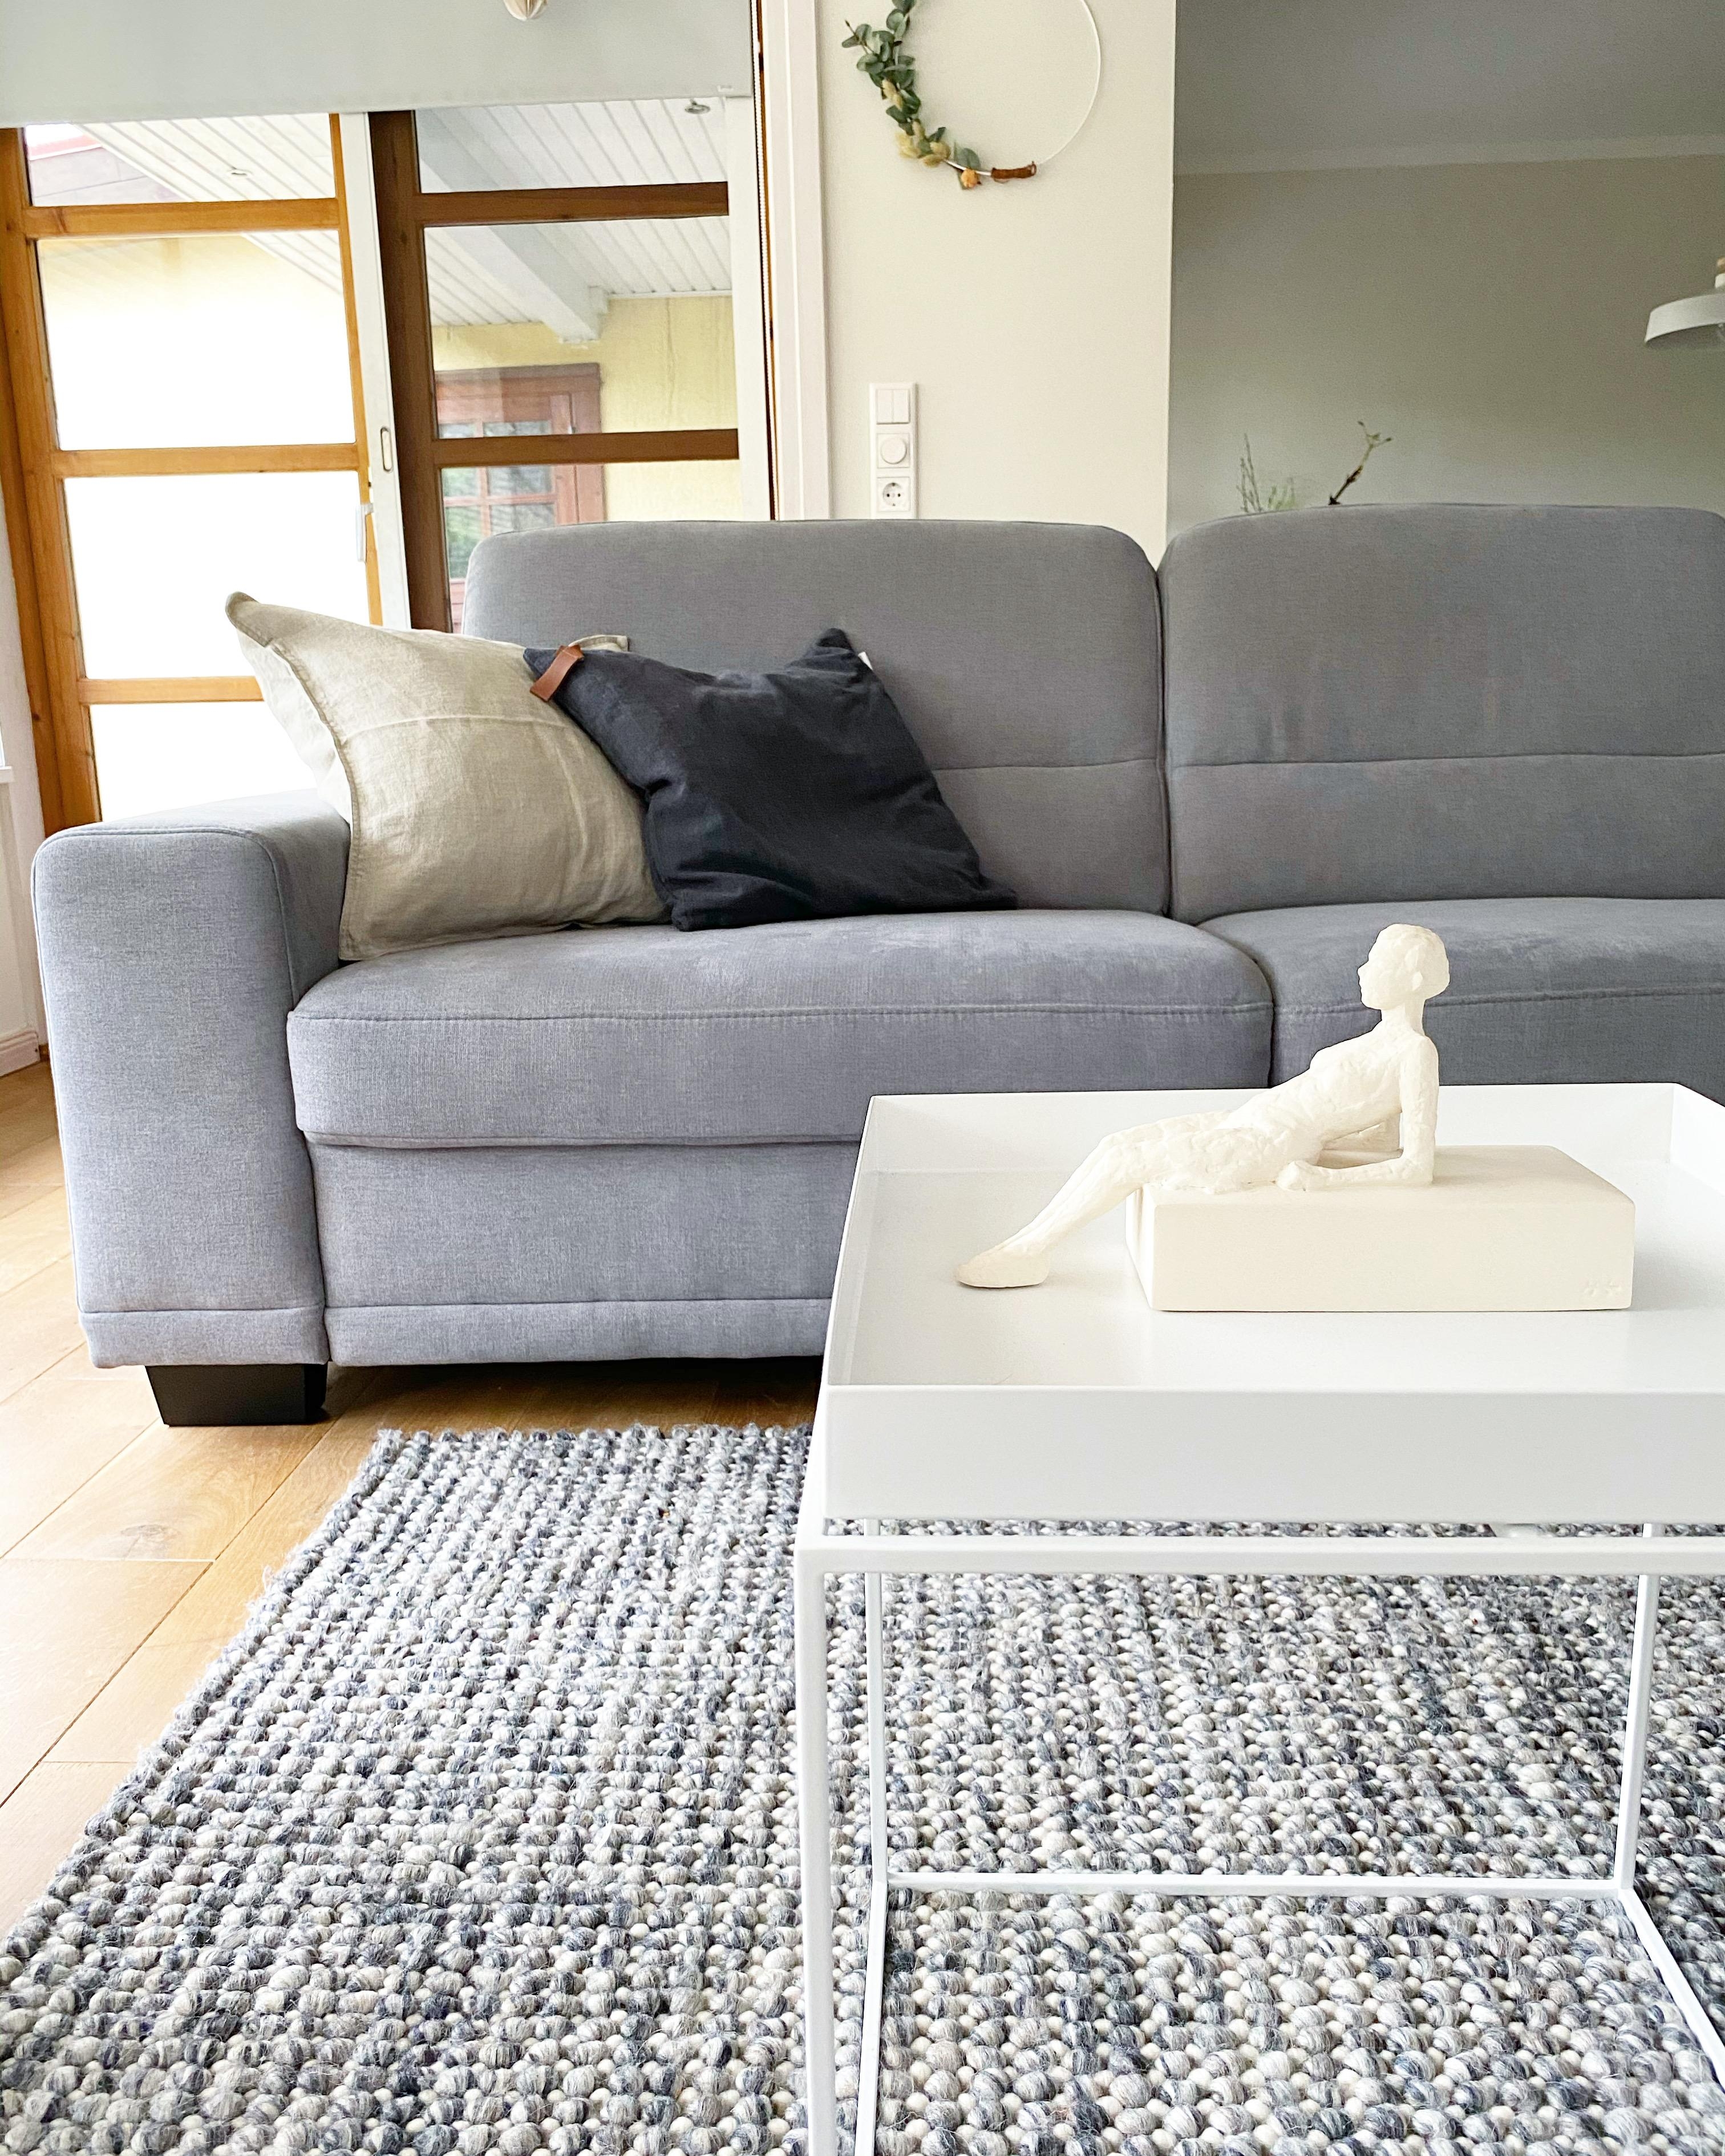 Hygge aufm Sofa #sofaliebe #couchstyle #wohnzimmer